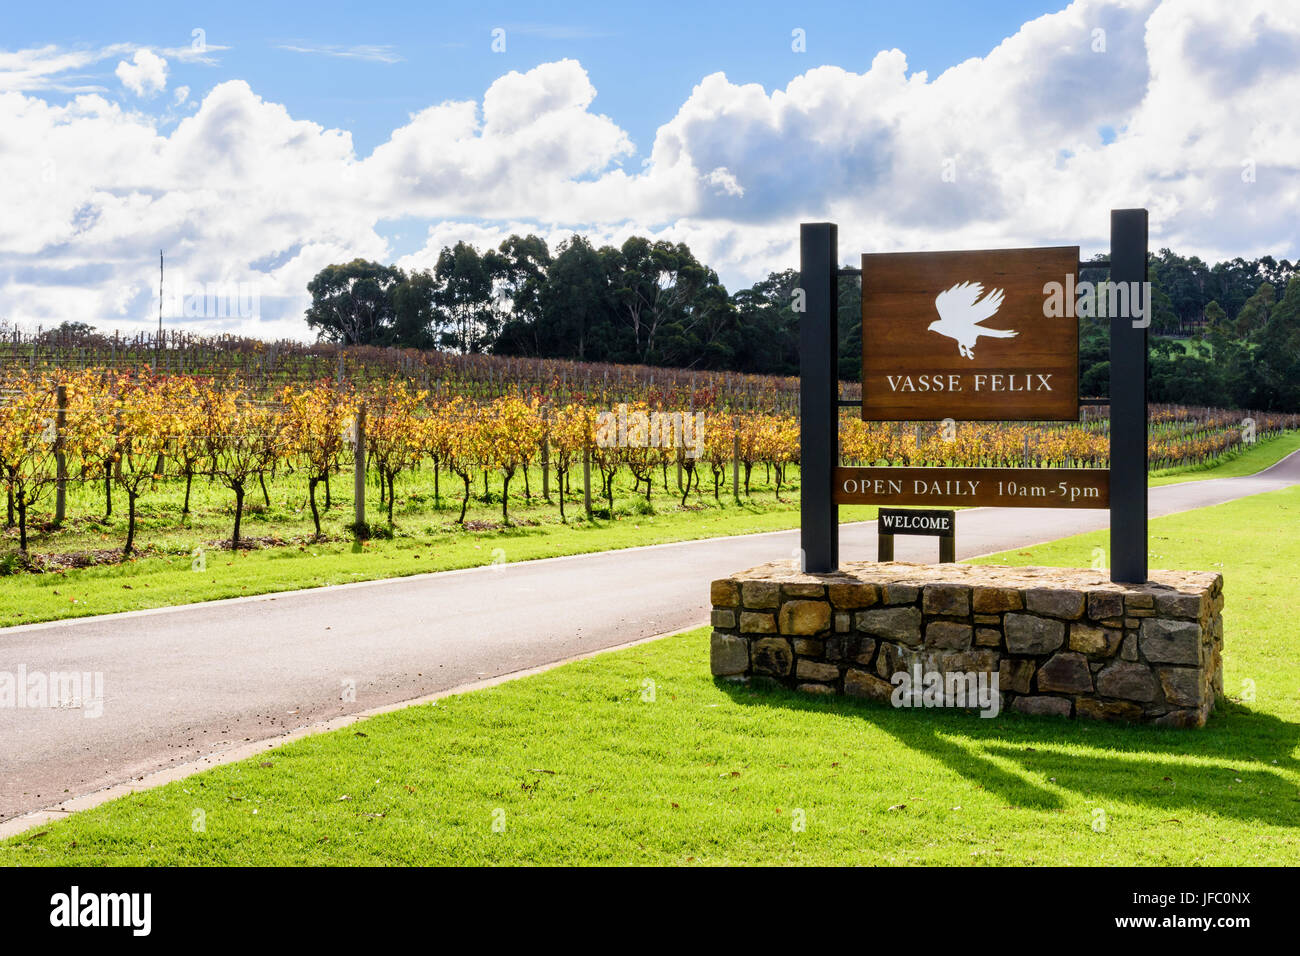 Vignes d'hiver autour de l'entrée de Vasse Felix vignoble dans la région de Margaret River en Australie de l'Ouest, du Sud, de l'Australie-Occidentale Cowaramup Banque D'Images